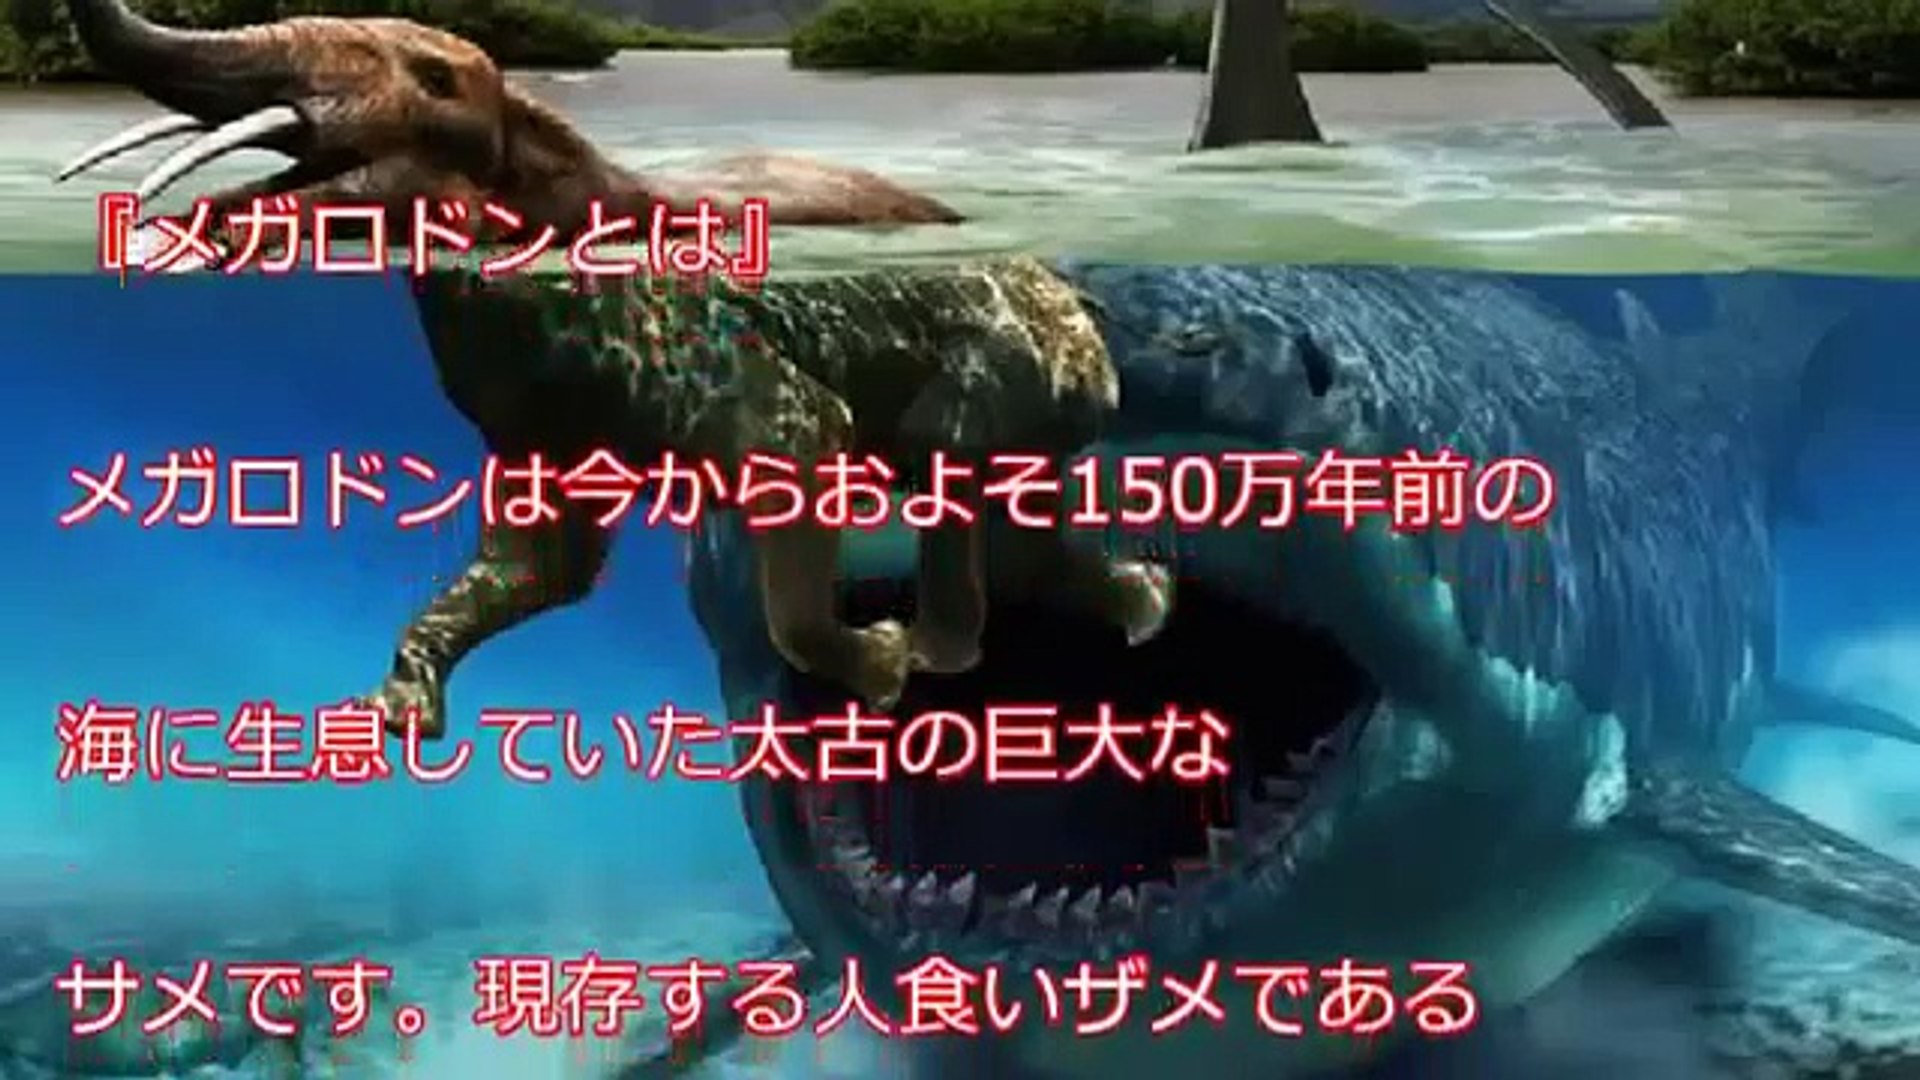 衝撃 超巨大サメ メガロドンは絶滅していなかった 世界で多発する目撃情報 世界に実在するマジでヤバイ超危険生物 Video Dailymotion